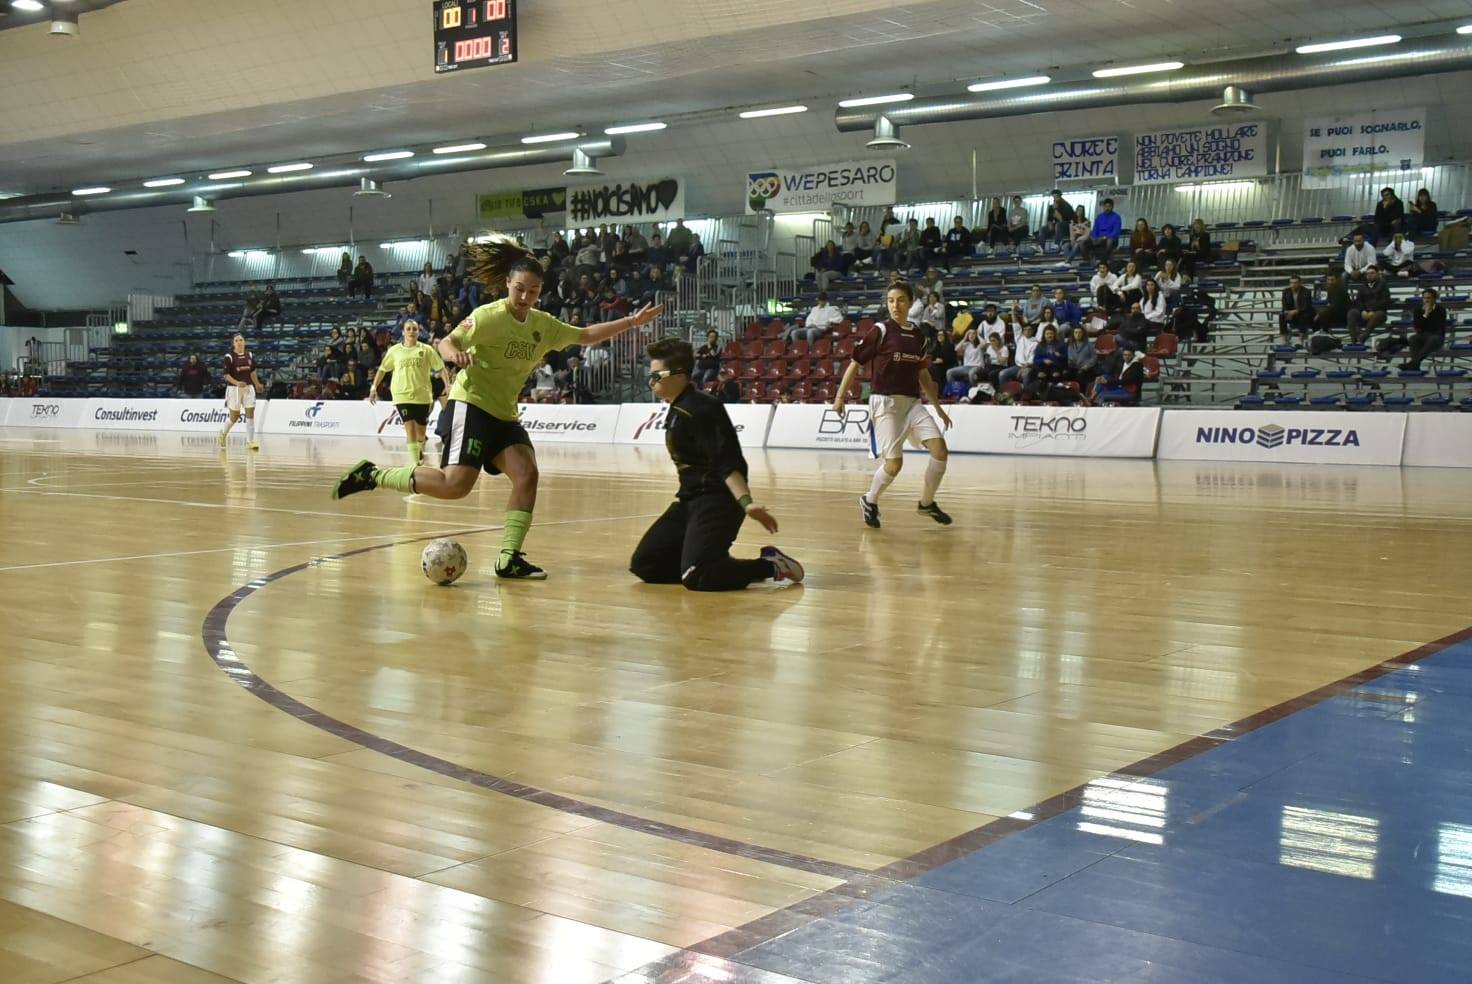 https://www.futsalprandone.com/www.futsalprandone.com/home/wordpress/wp-content/uploads/2019/07/Futsal-Prandone-Campione-regionale-marche.jpg